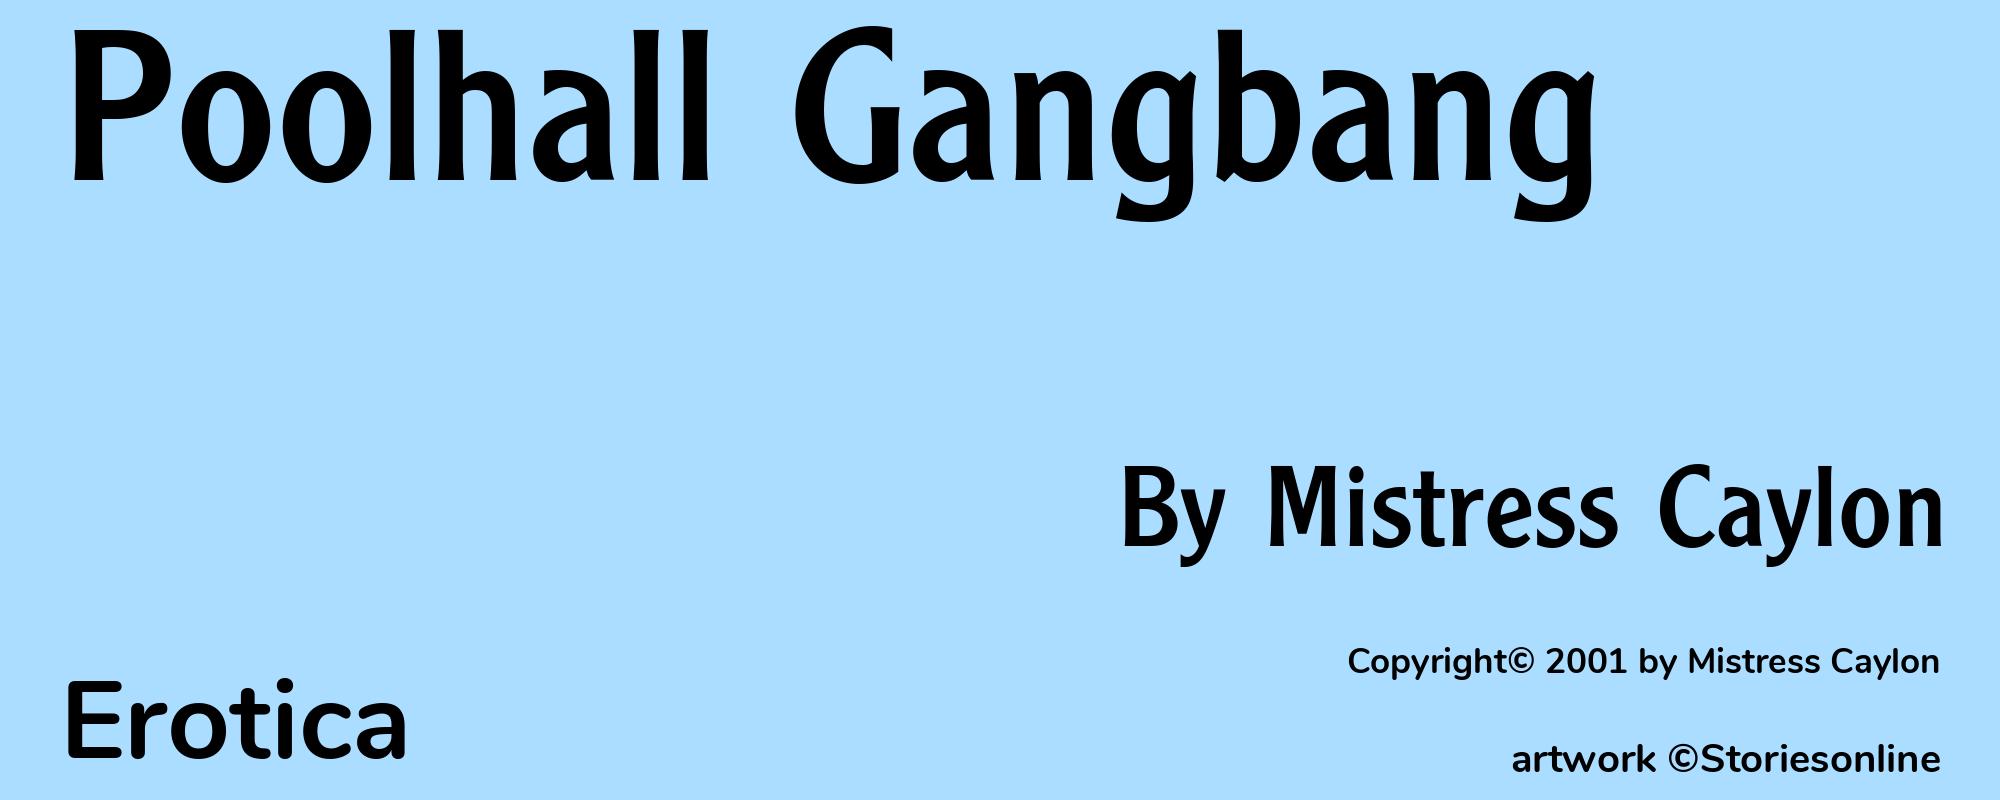 Poolhall Gangbang - Cover